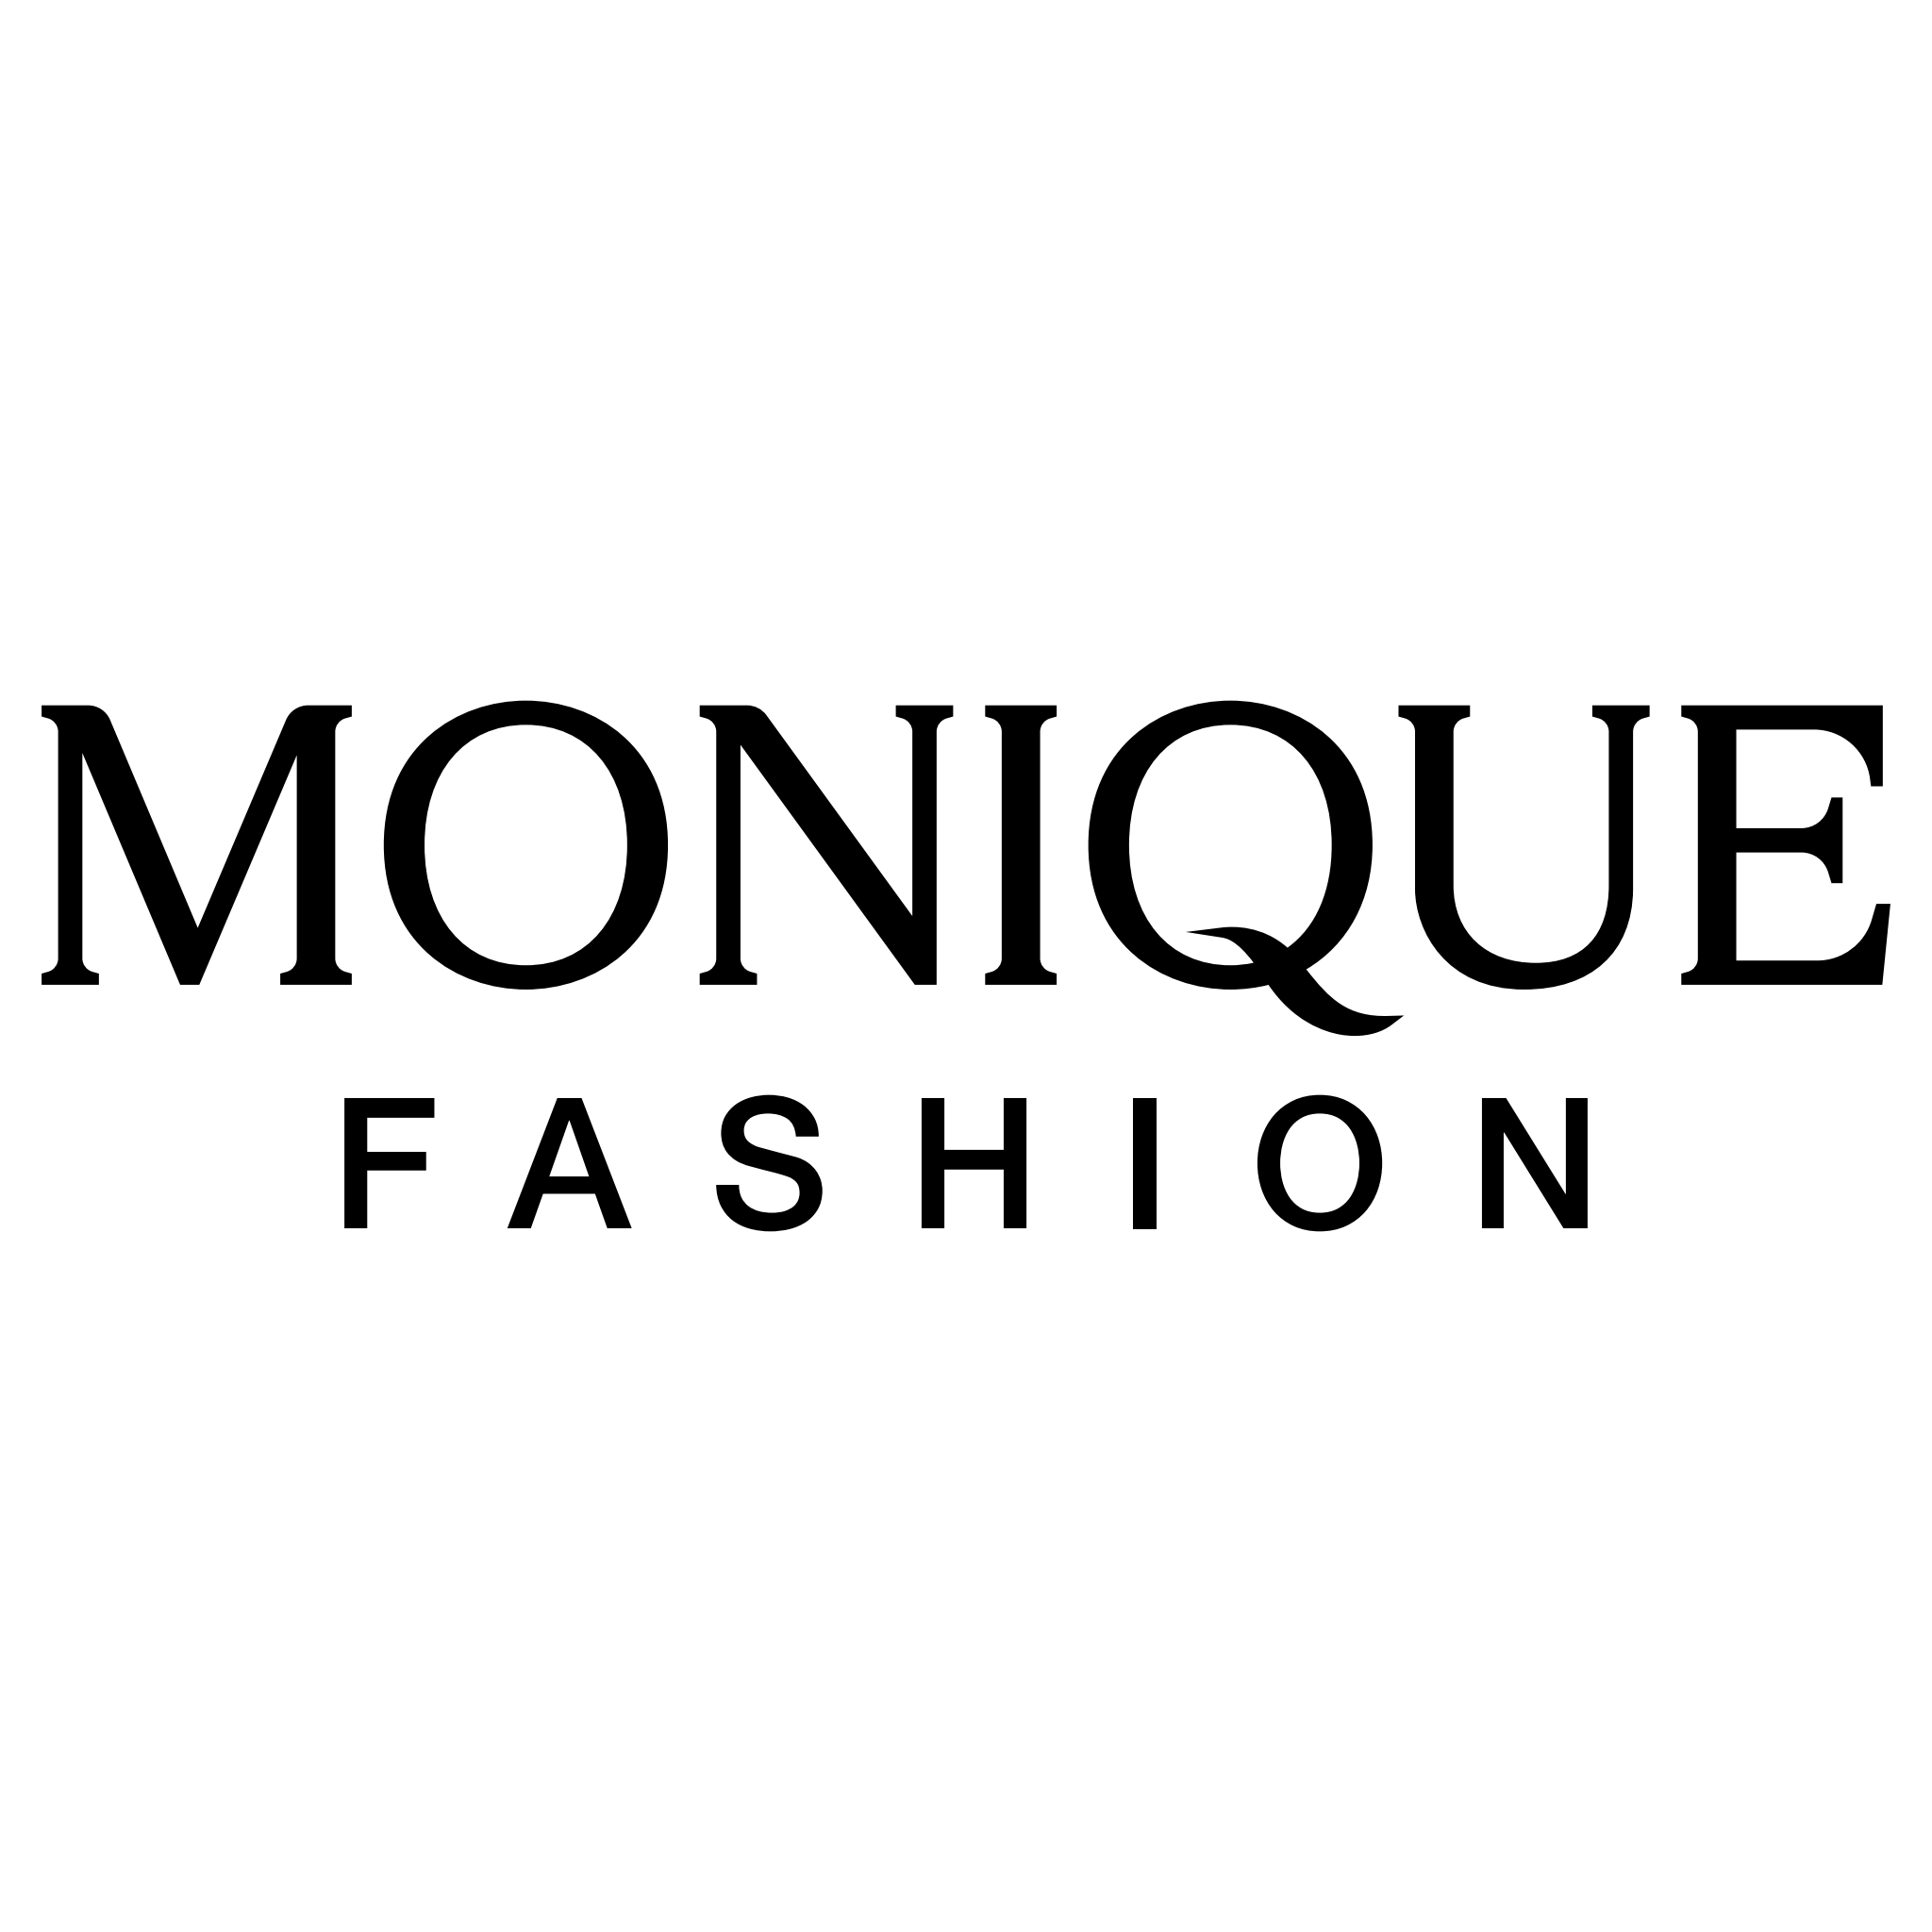 Monique Fashion Accessories